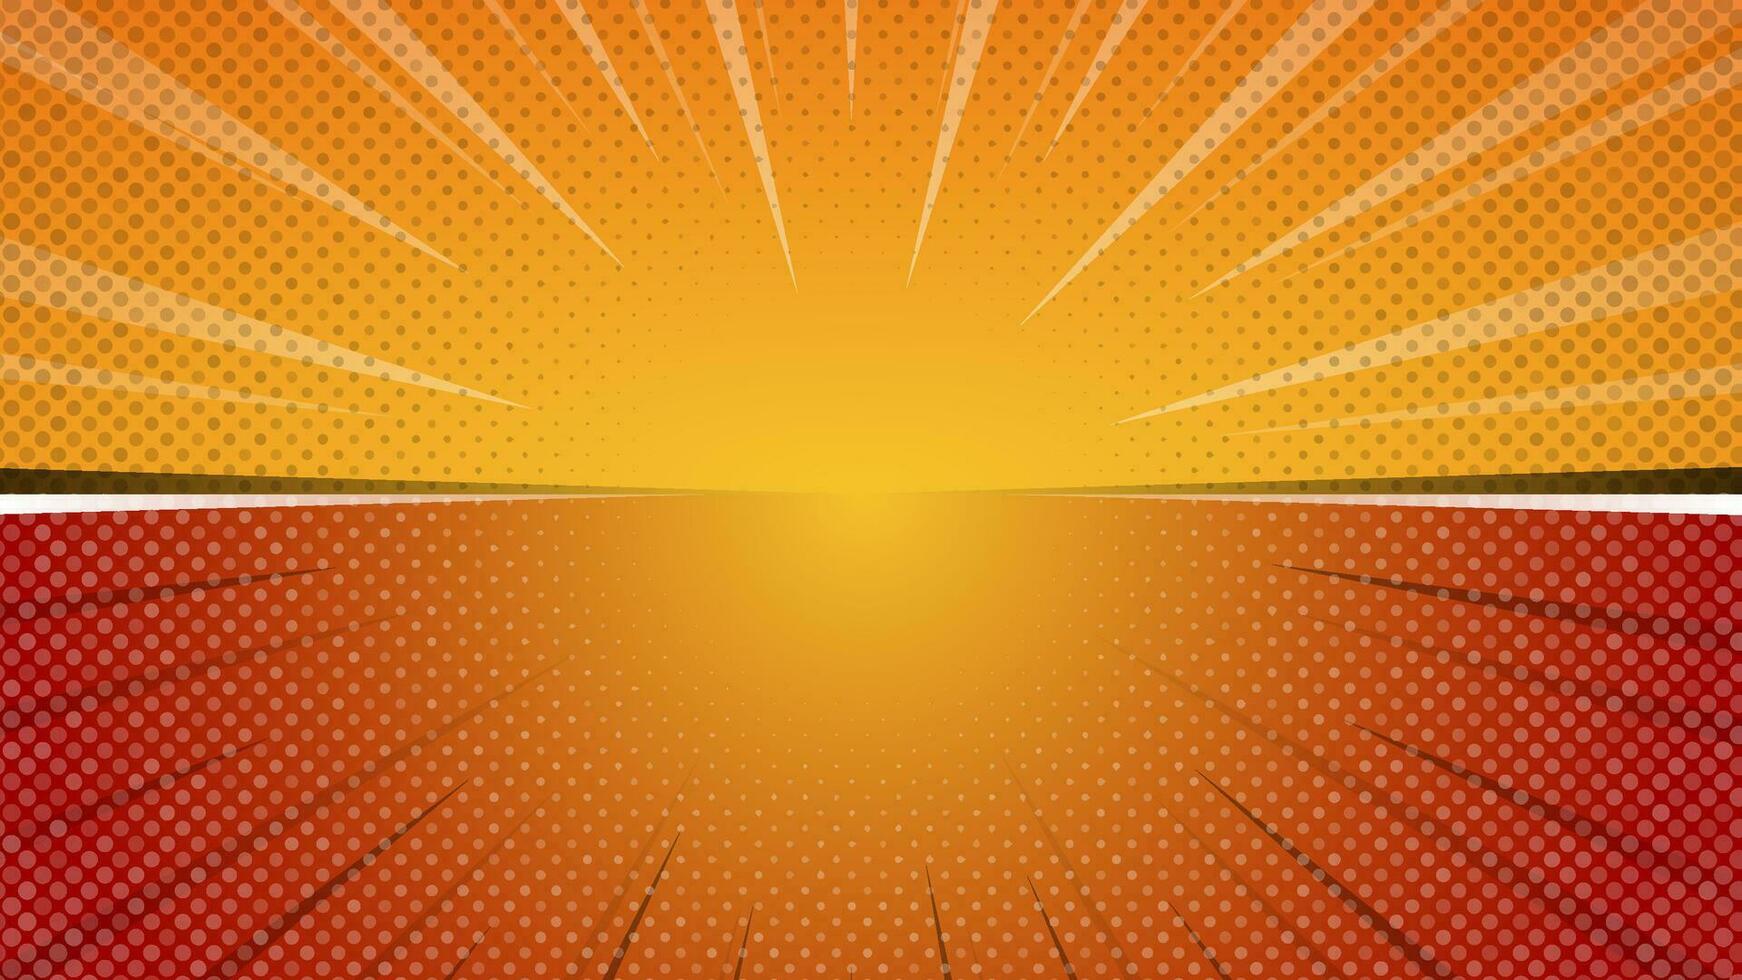 cómic libro naranja antecedentes con rayos y trama de semitonos puntos rayos de sol antecedentes ilustración para tu diseño. vector